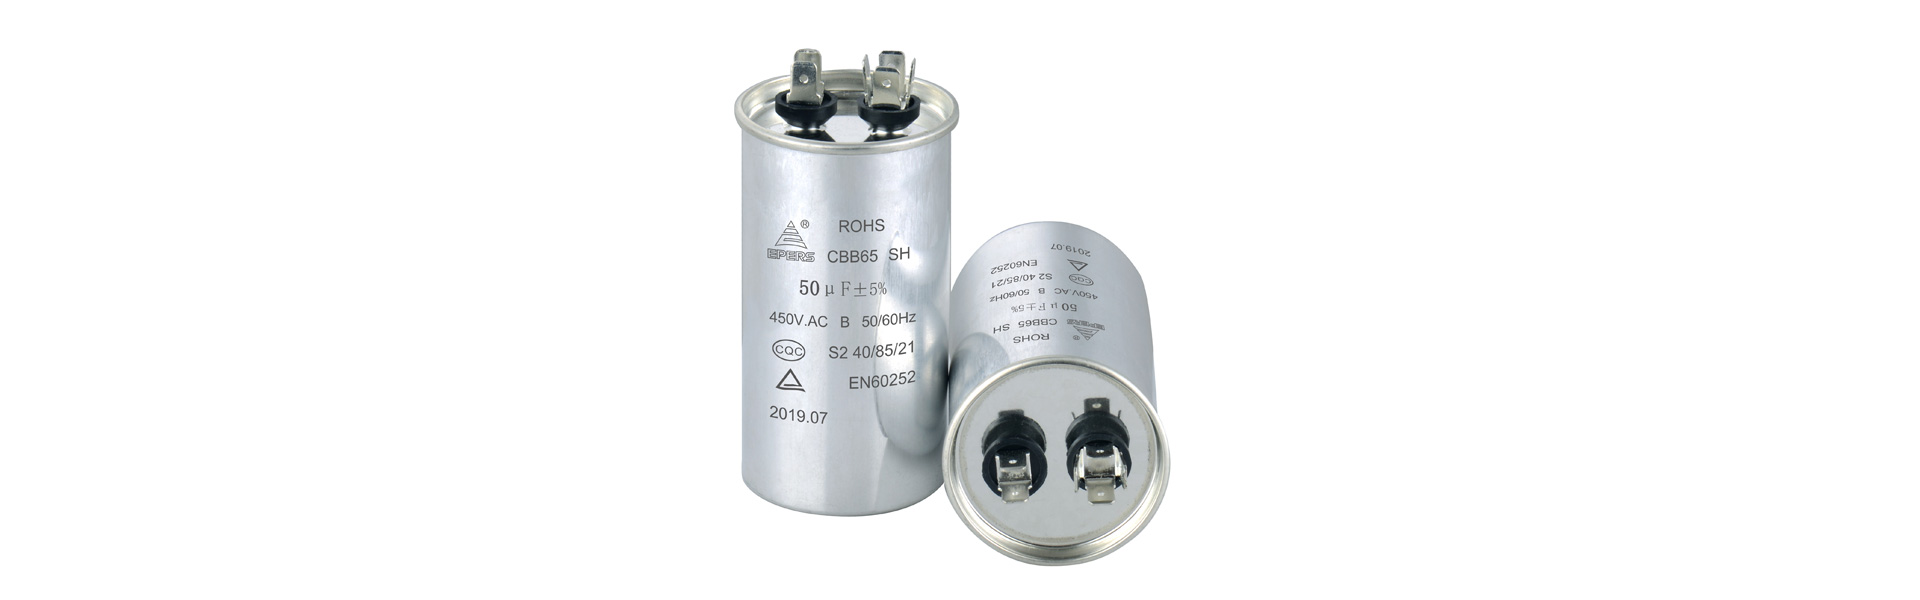 Noyau de condensateur, film métallique, cb61,Zhongshan Epers Electrical Appliances Co.,Ltd.